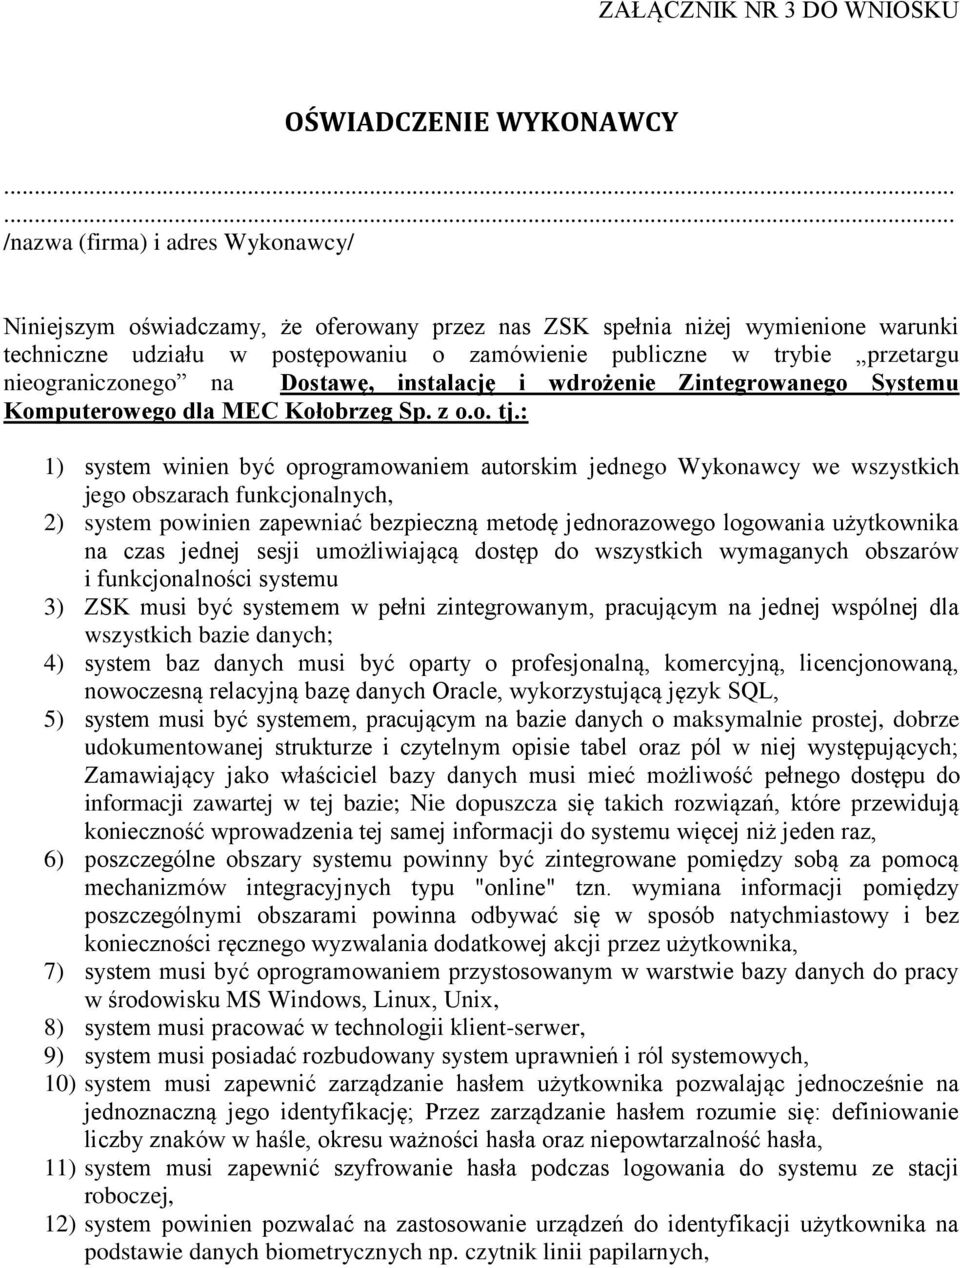 nieograniczonego na Dostawę, instalację i wdrożenie Zintegrowanego Systemu Komputerowego dla MEC Kołobrzeg Sp. z o.o. tj.